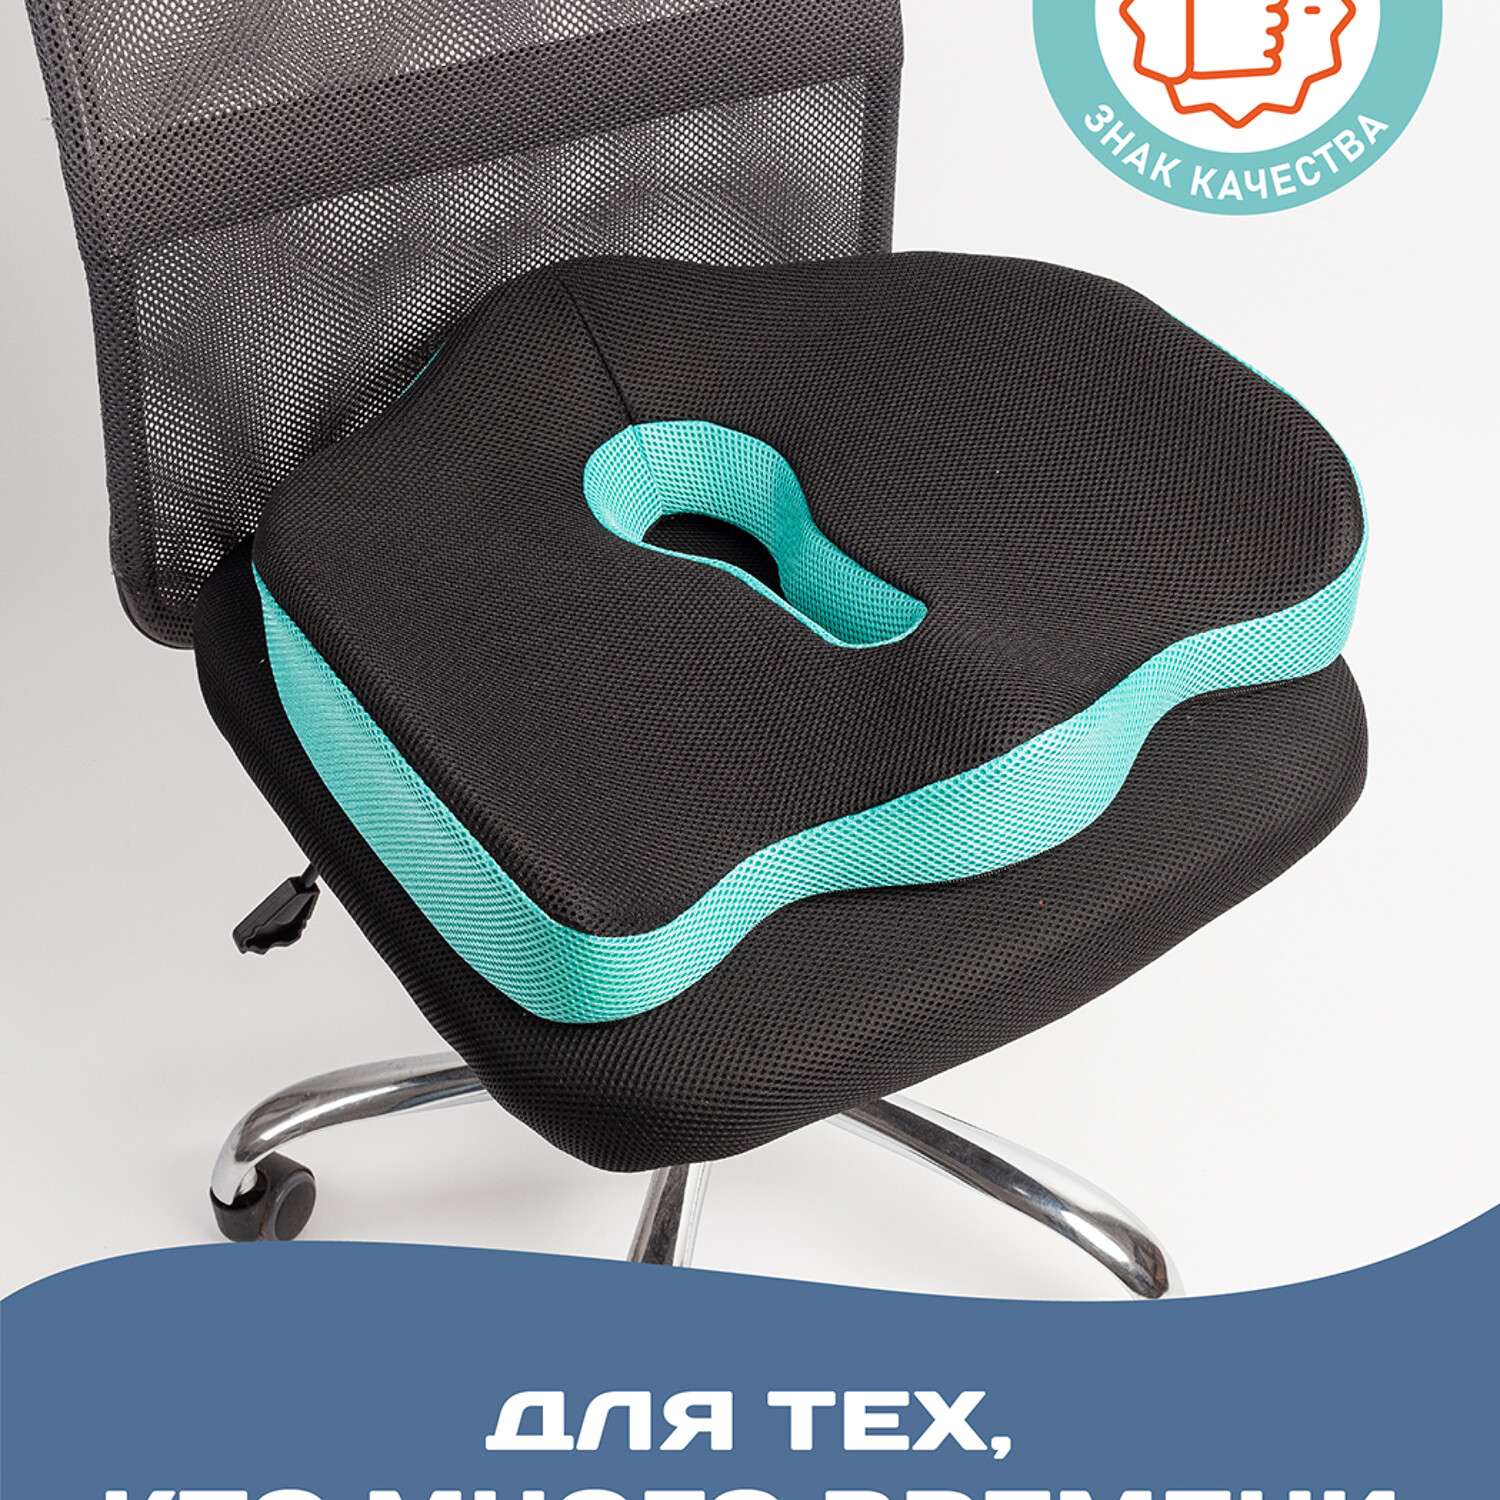 Ортопедическая подушка Ambesonne для сидения под копчик на офисный стул сидение автомобиля 45х40 см - фото 4